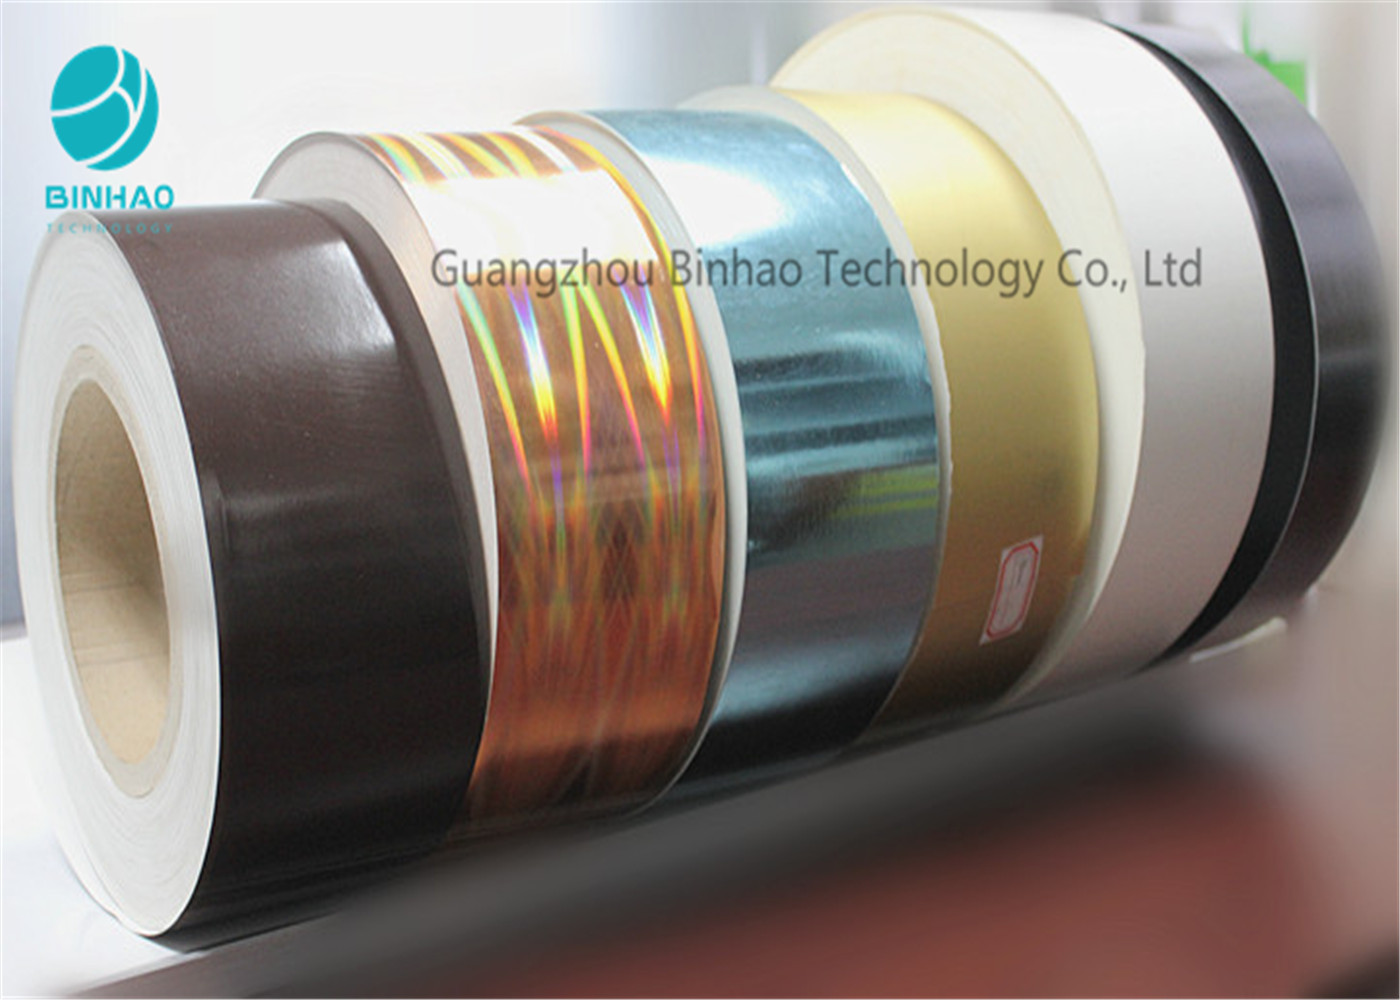 Напечатанная рамка красочной бумаги табака картона внутренняя с внутренним ядром 120мм